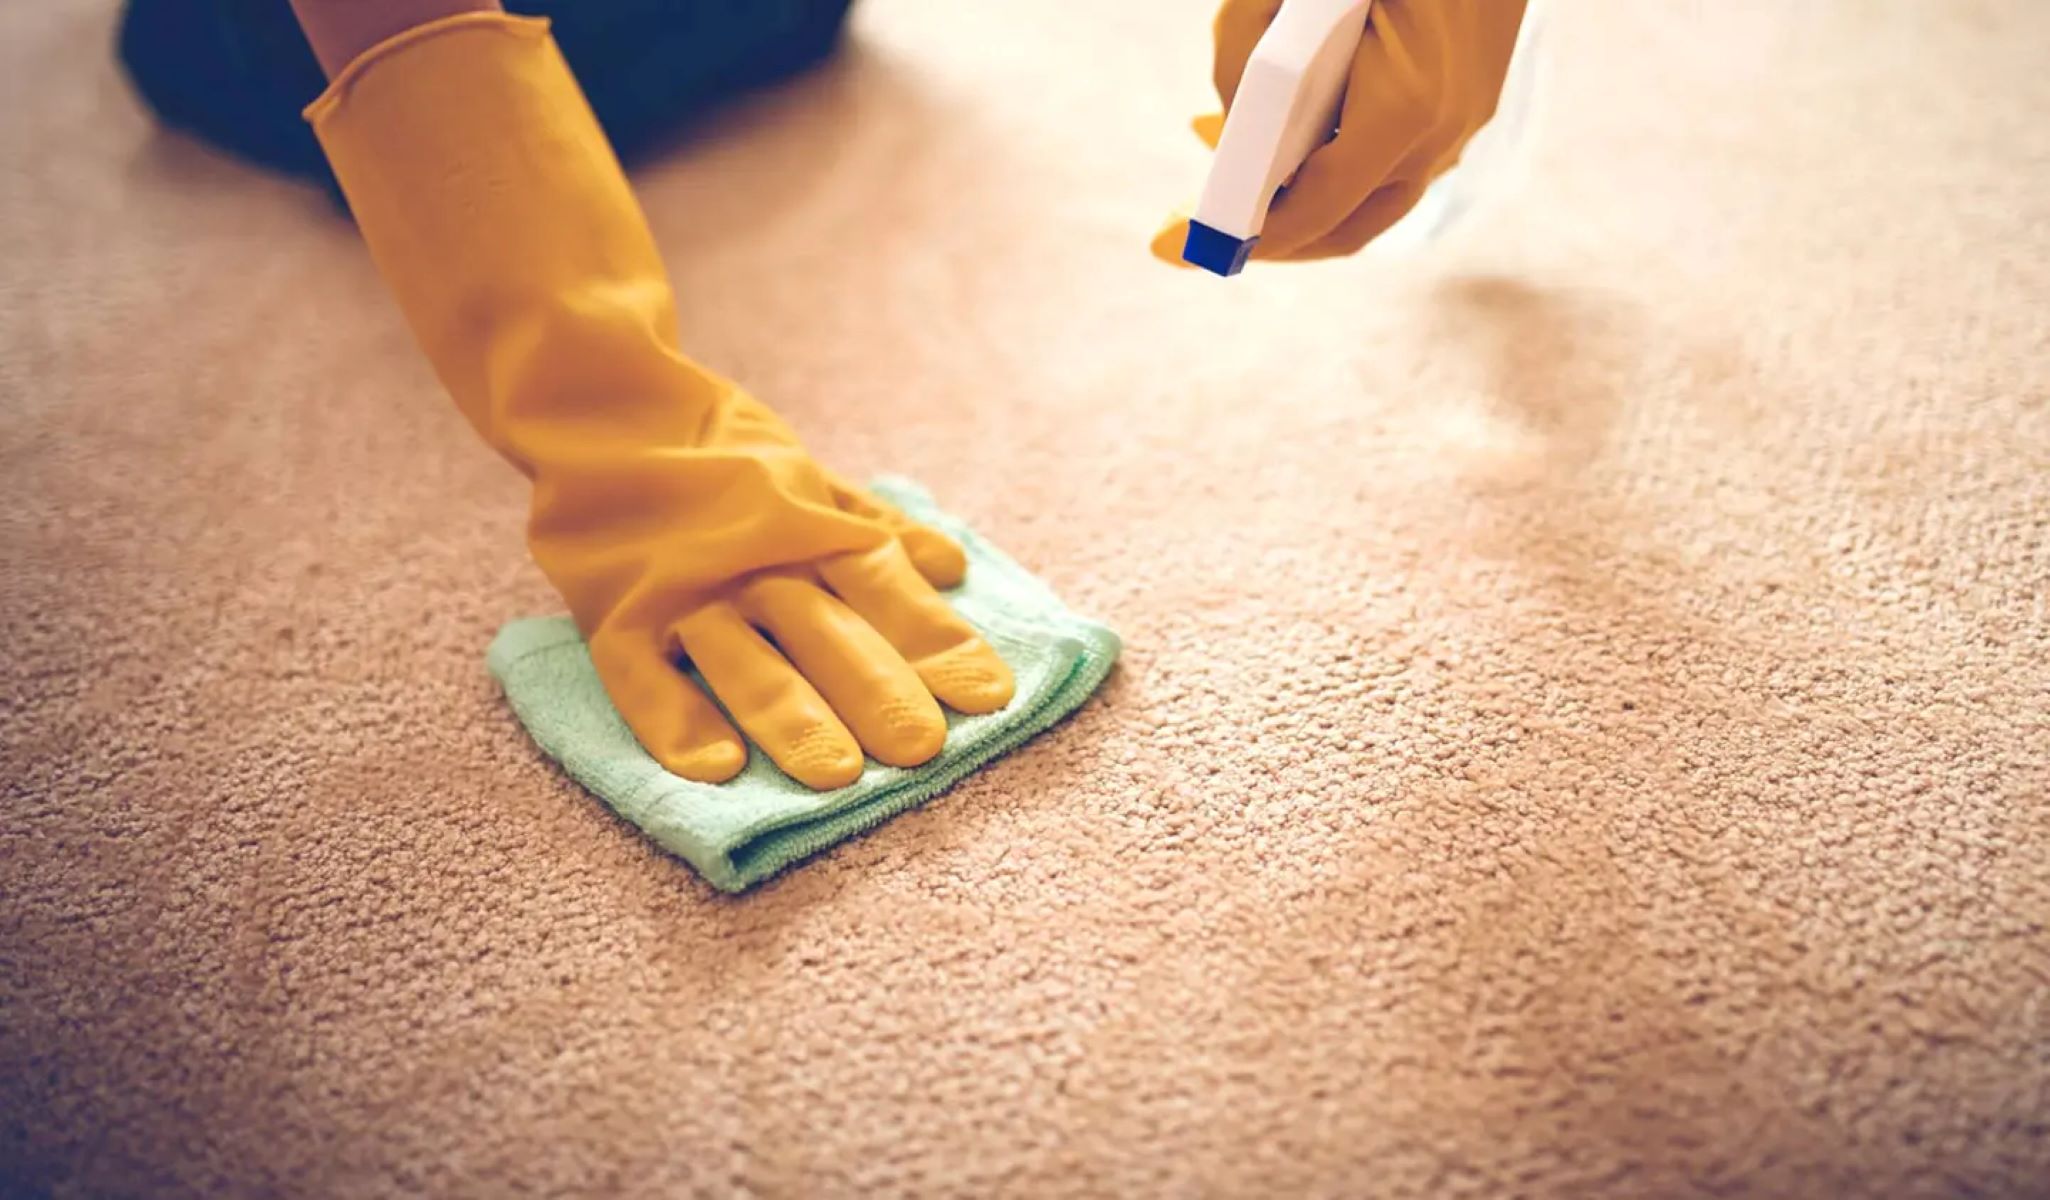 How To Neutralize Carpet Deodorizer Smell